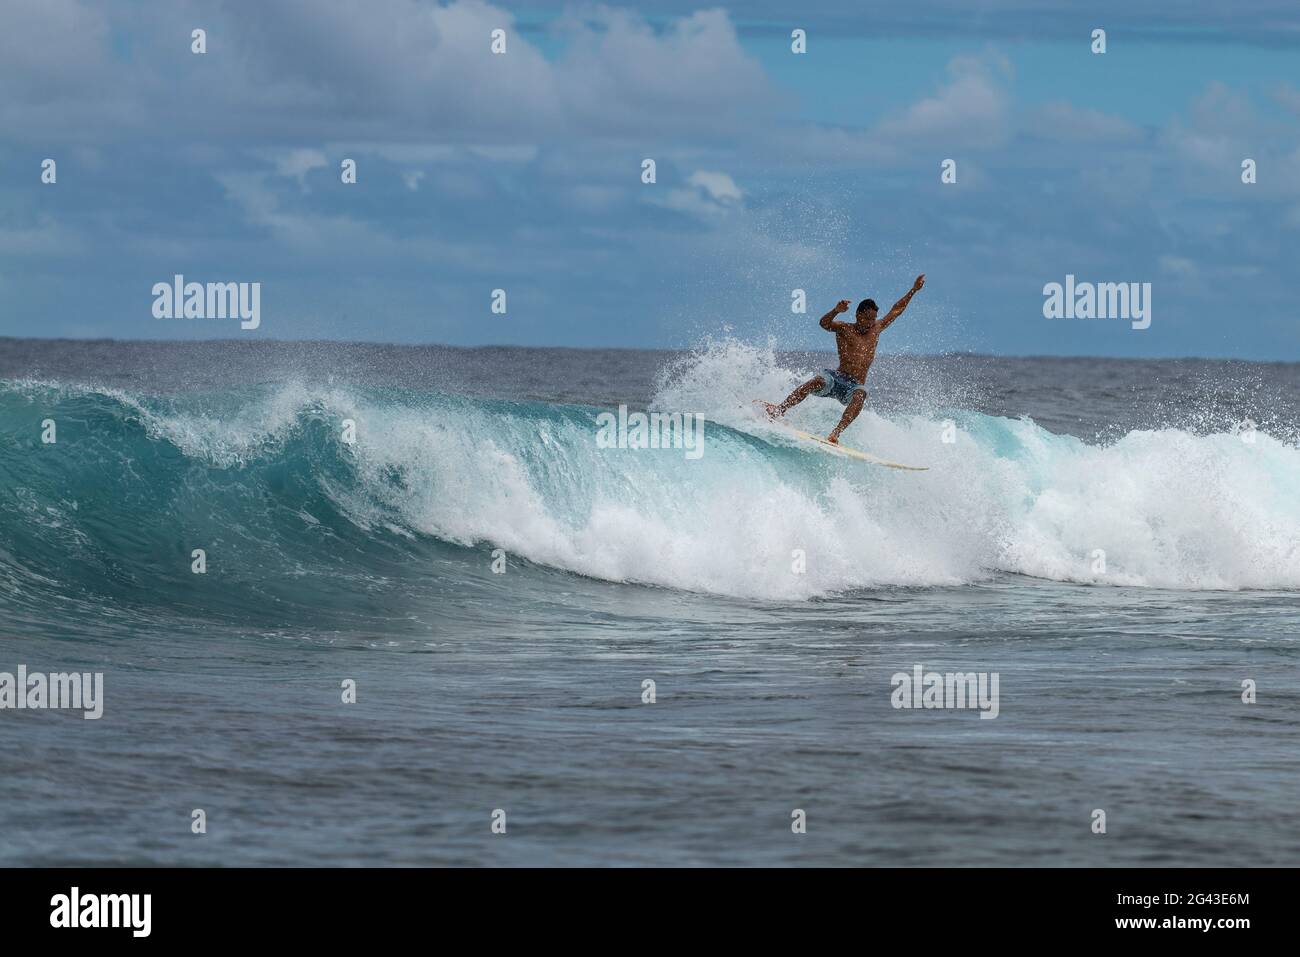 Surfez sur la vague de rupture dans la zone de surf Teahupoo, Tahiti Iti, Tahiti, les îles du vent, Polynésie française, Pacifique Sud Banque D'Images